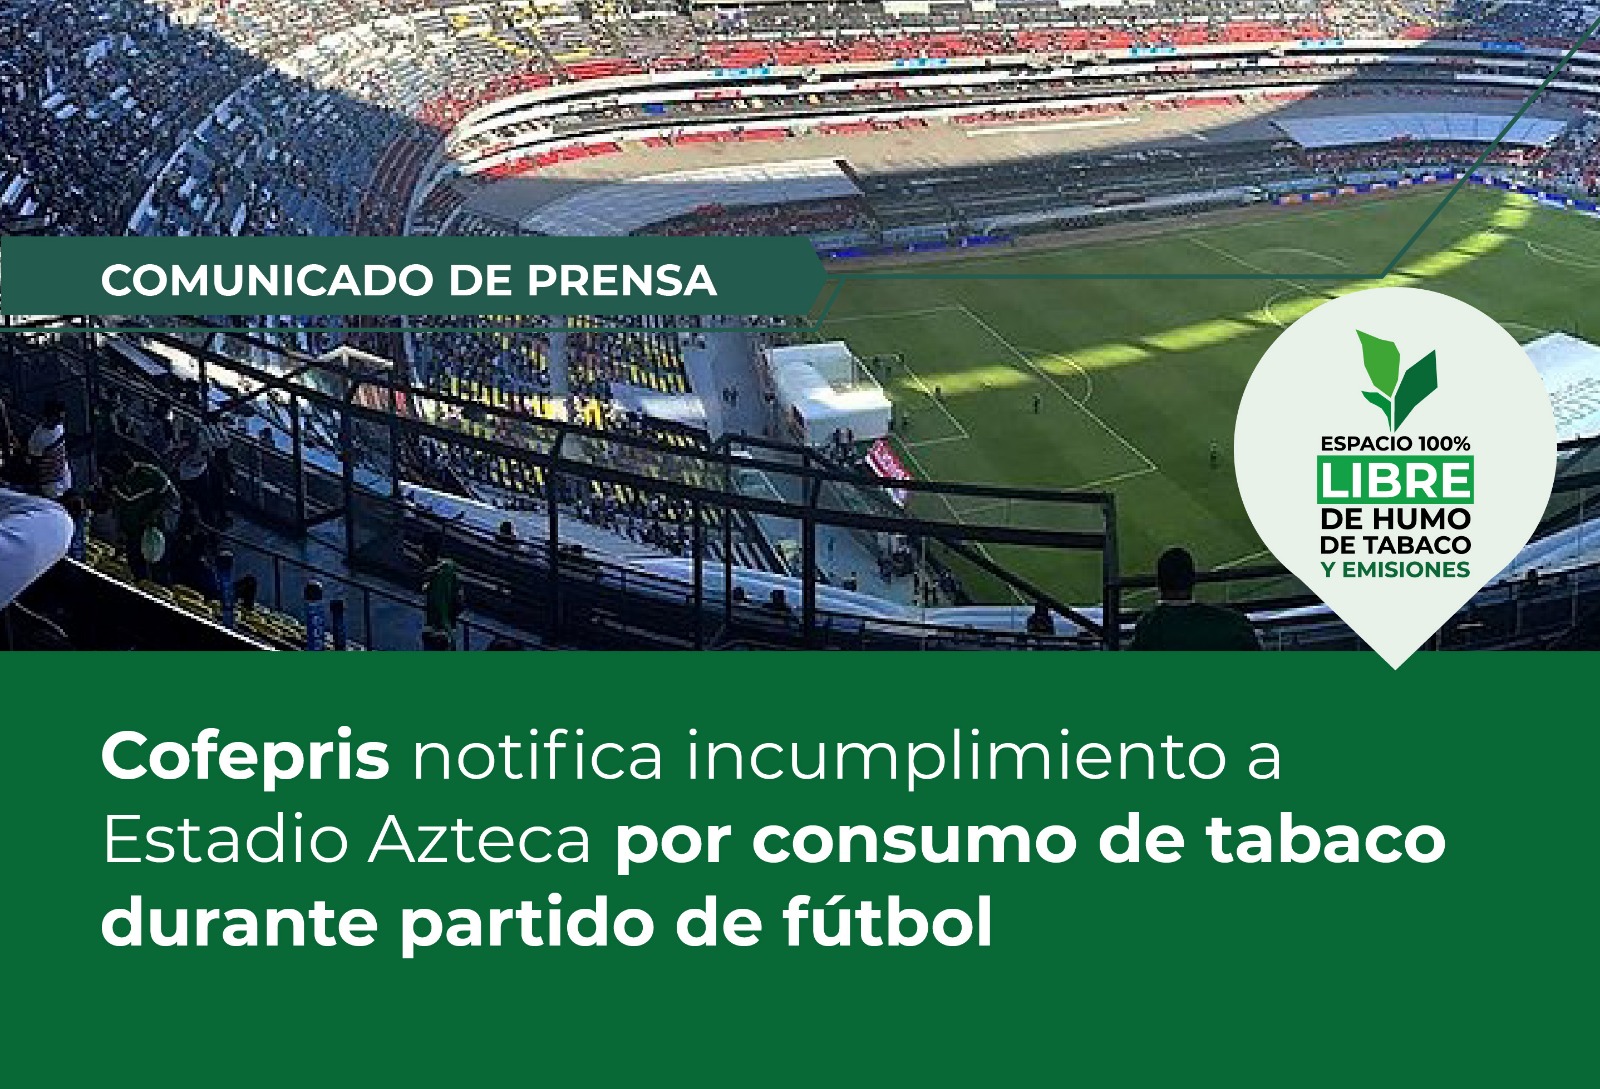 Incumple Estadio Azteca Ley General para el Control del Tabaco: Cofepris